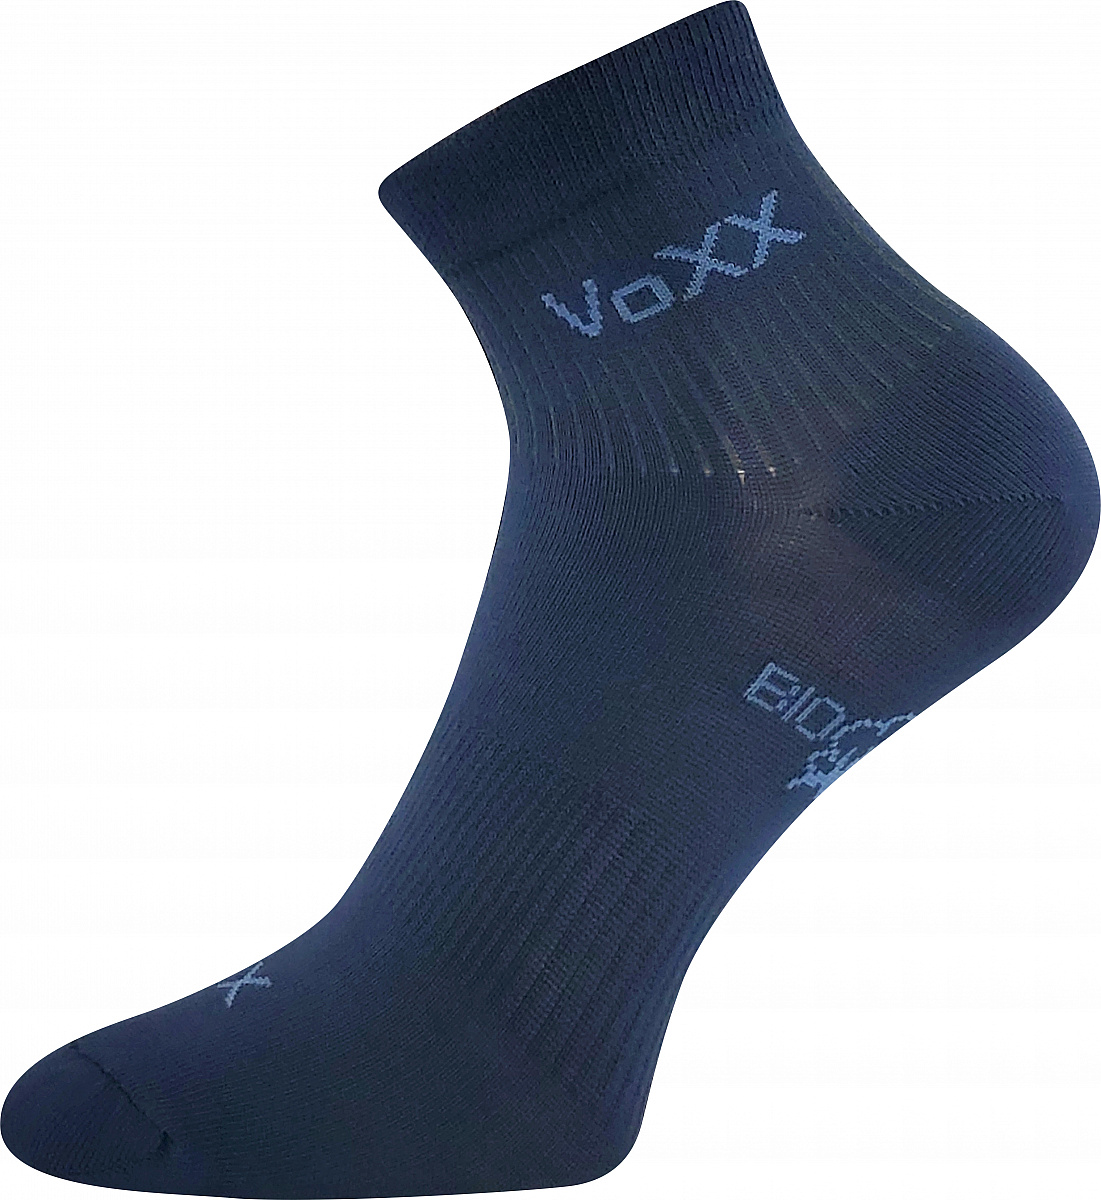 Ponožky VoXX - Boby, tmavě modrá Barva: Modrá tmavě, Velikost: 39-42